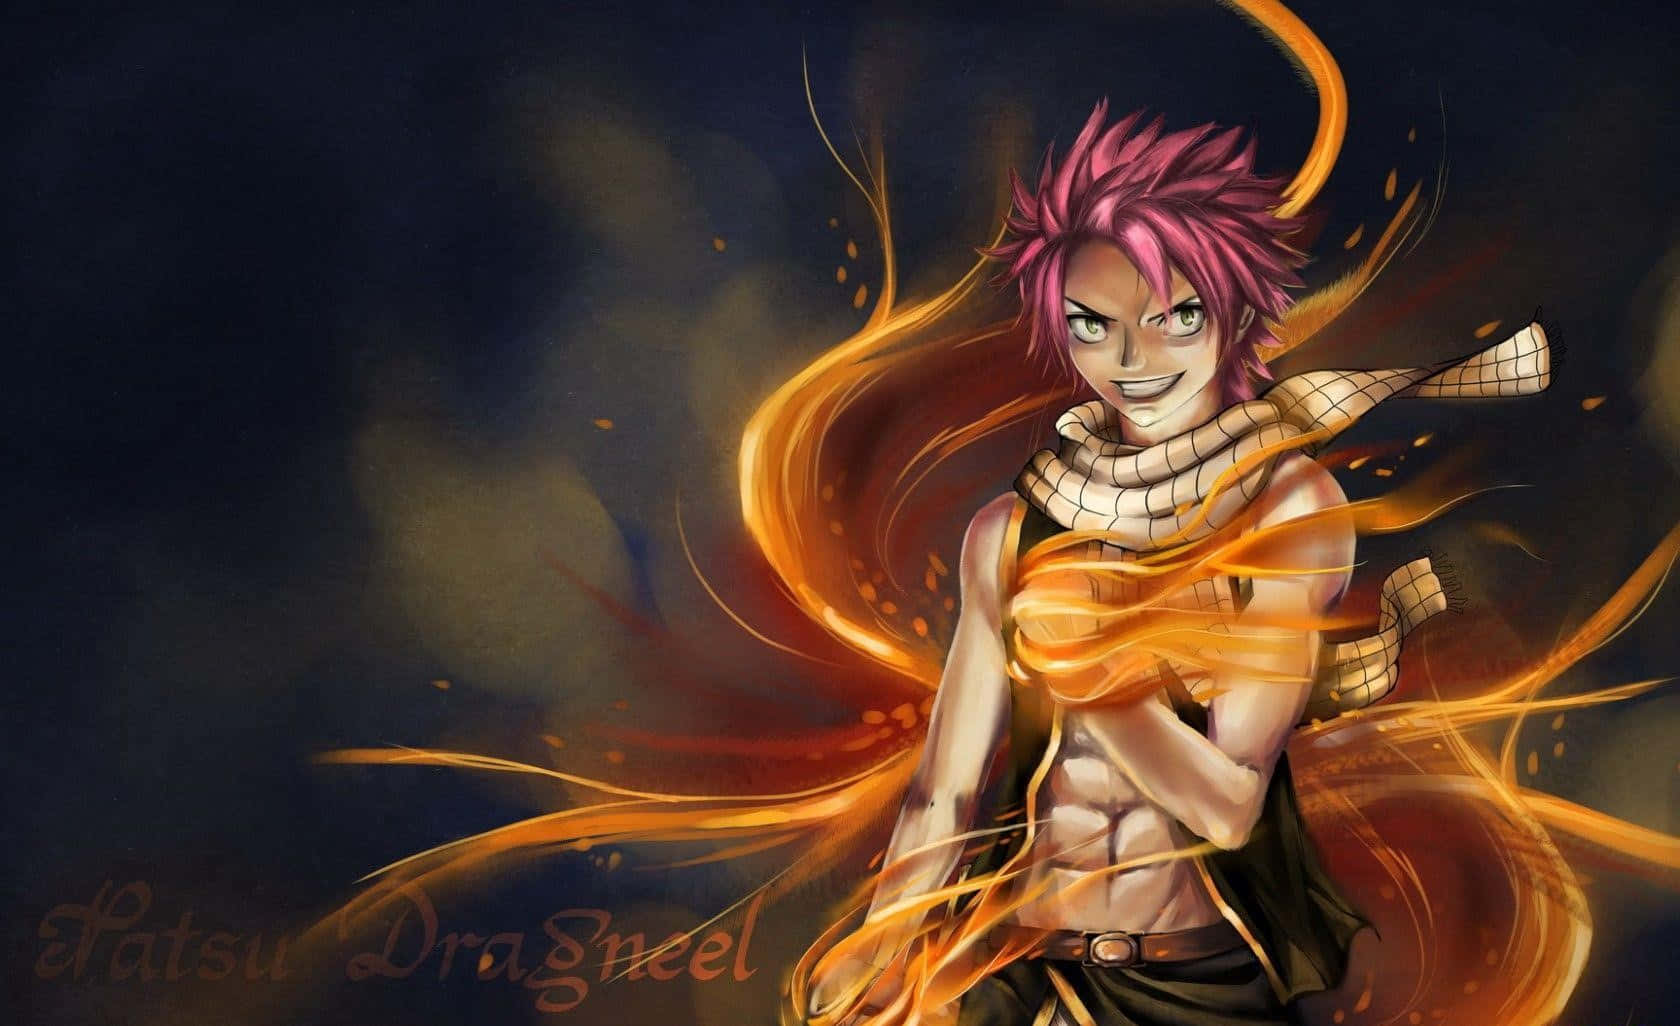 Natsu Dragneel unleashing his fiery power Wallpaper